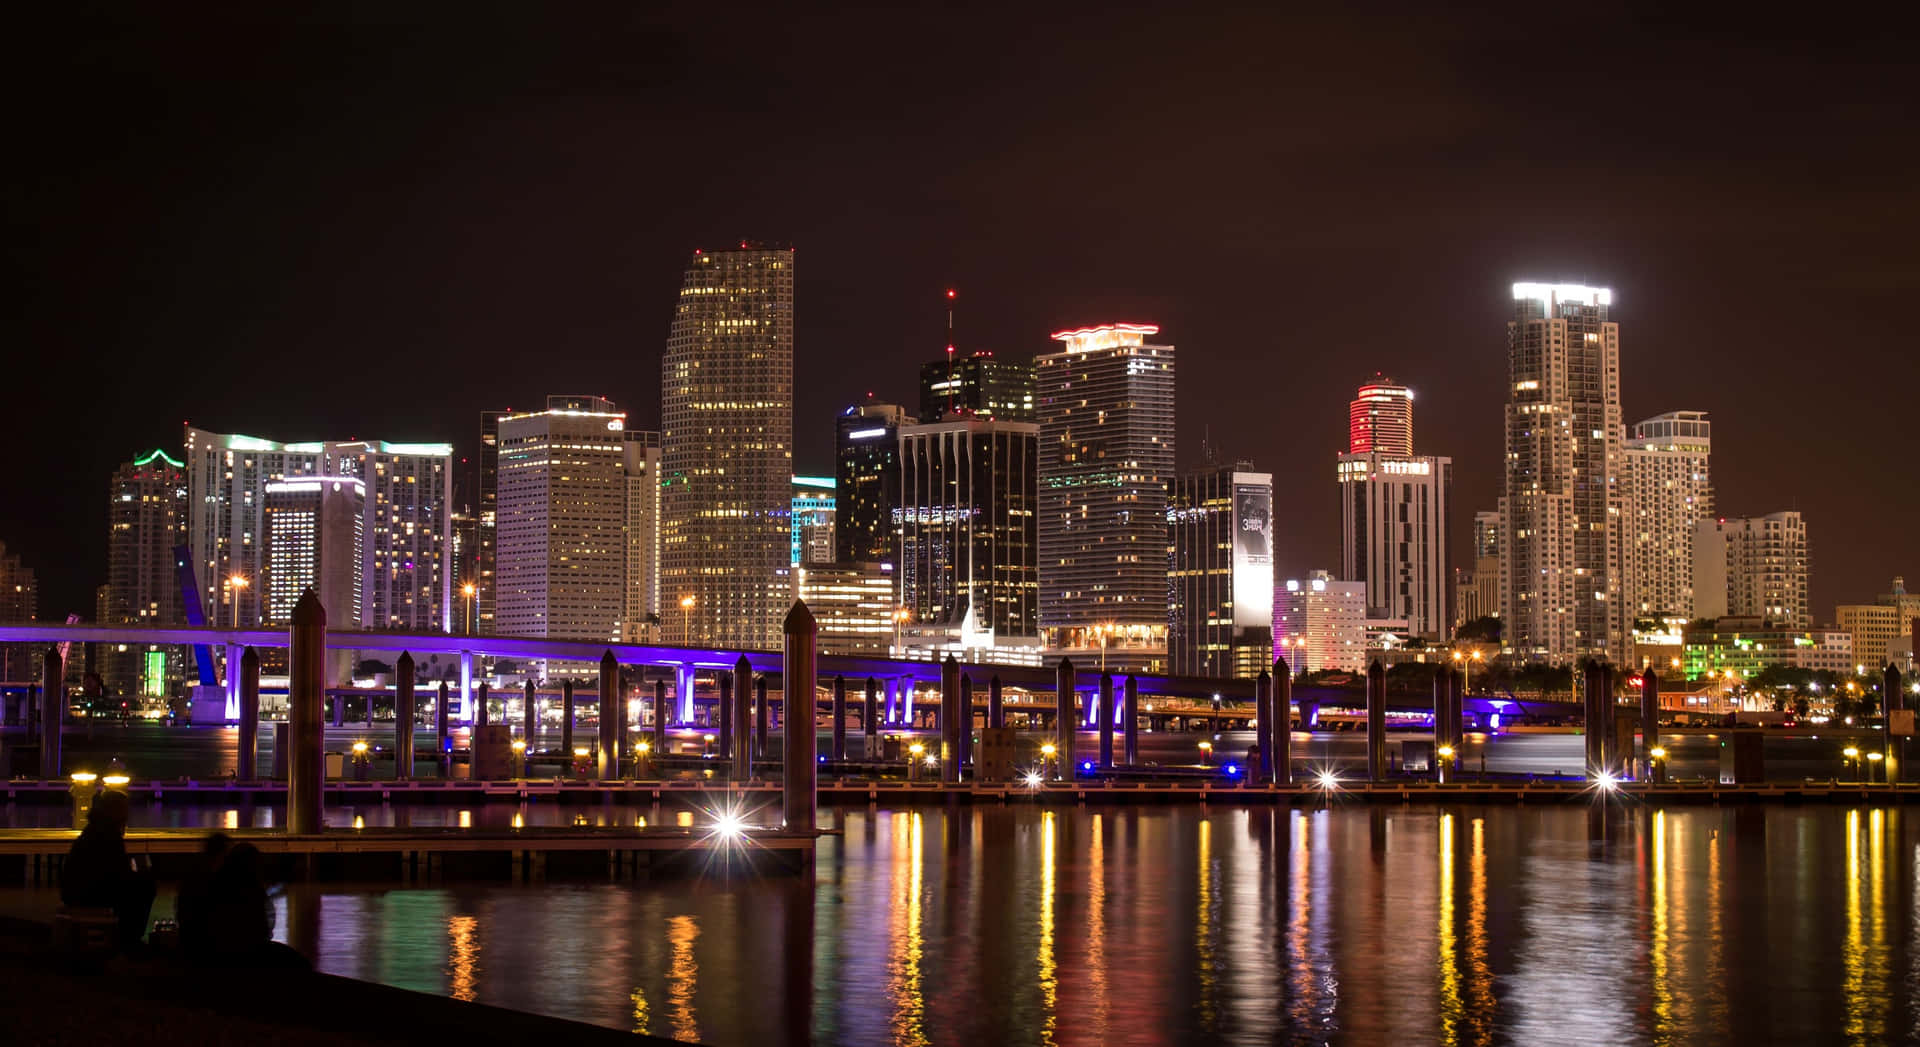 Nyd den smukke udsigt over Miami i 4K. Wallpaper